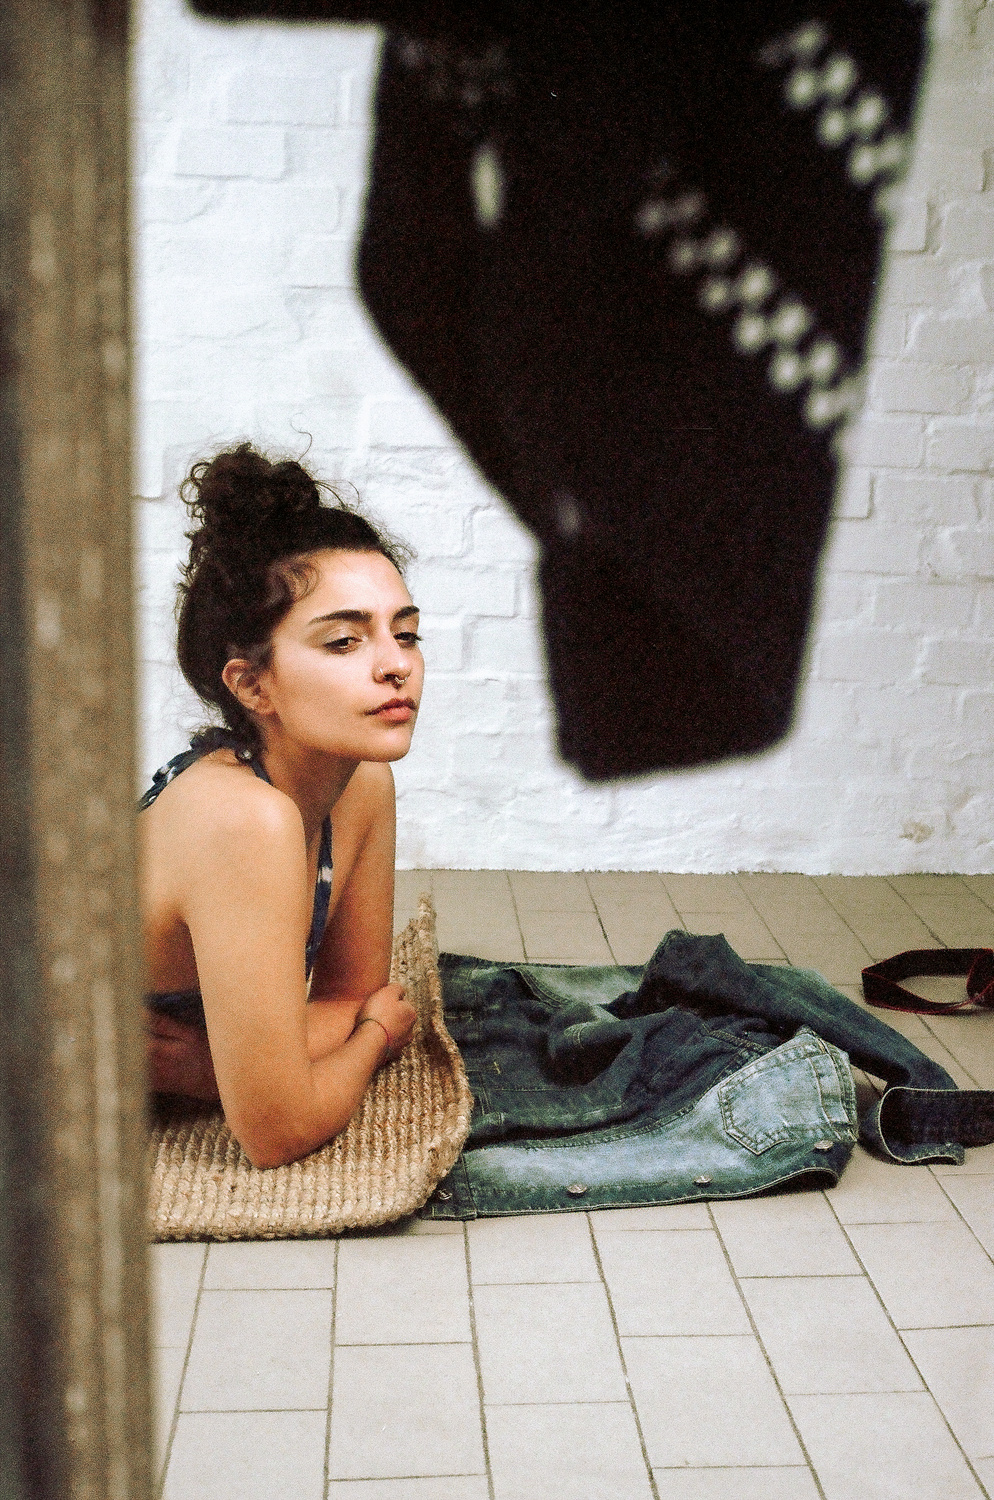 Ritratto di ragazza allo specchio con muro di mattoni sullo sfondo, fotografia analogica